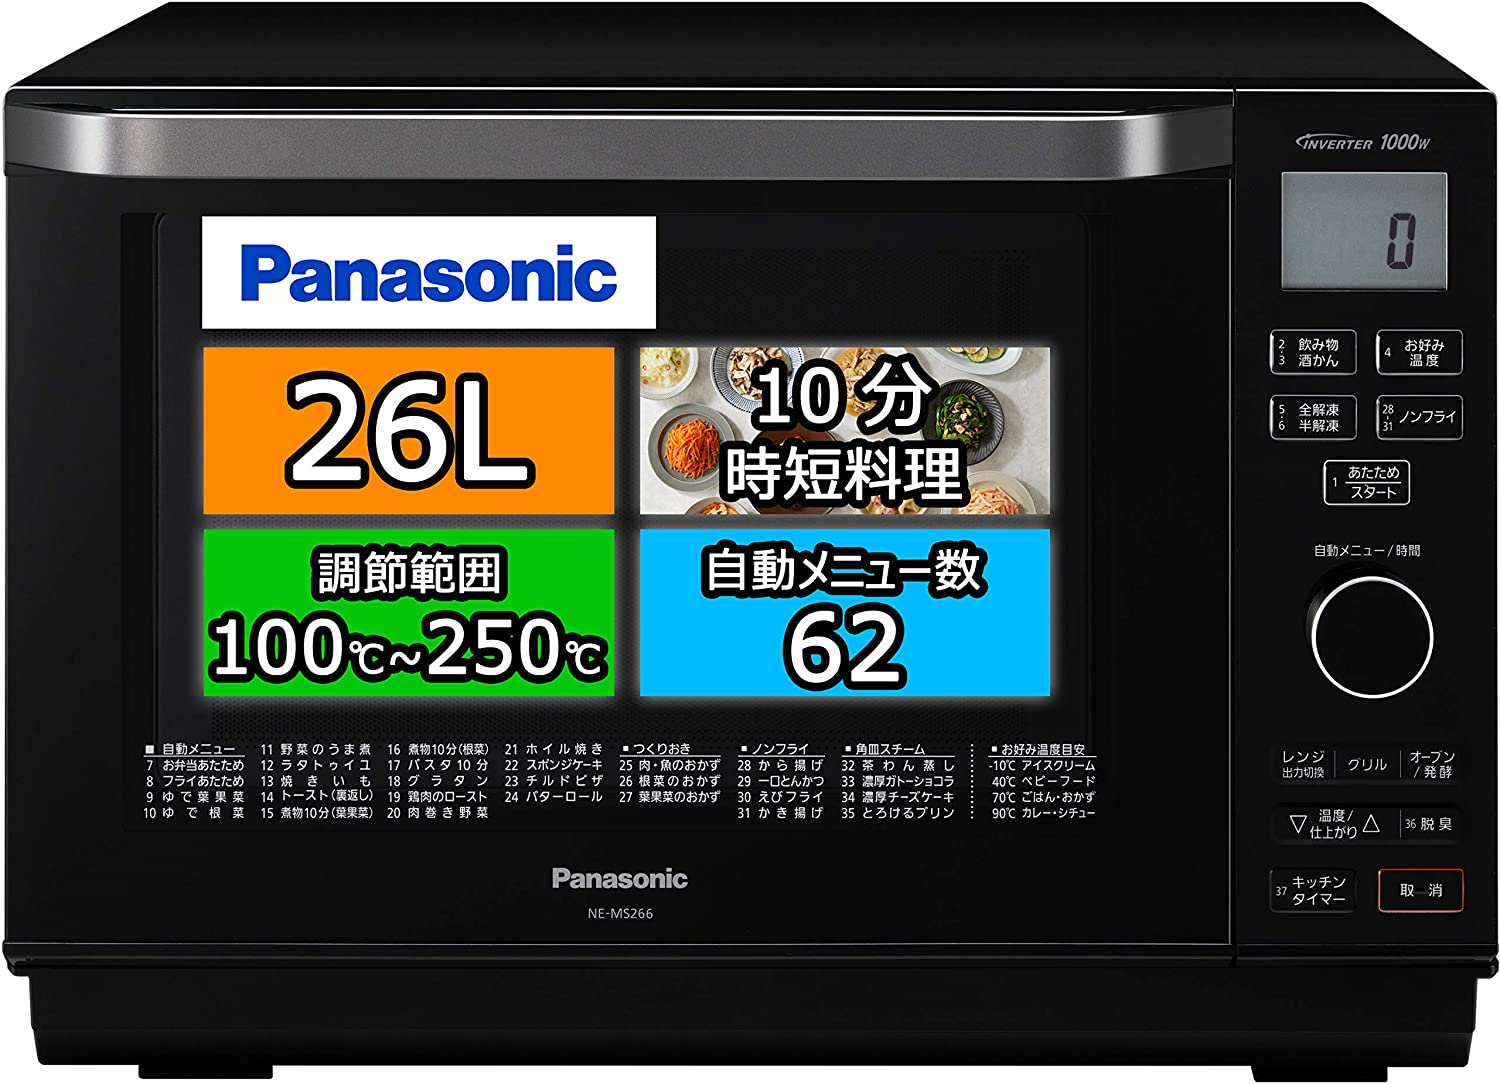 Panasonic(パナソニック) オーブンレンジ NE-MS266の商品画像サムネ1 